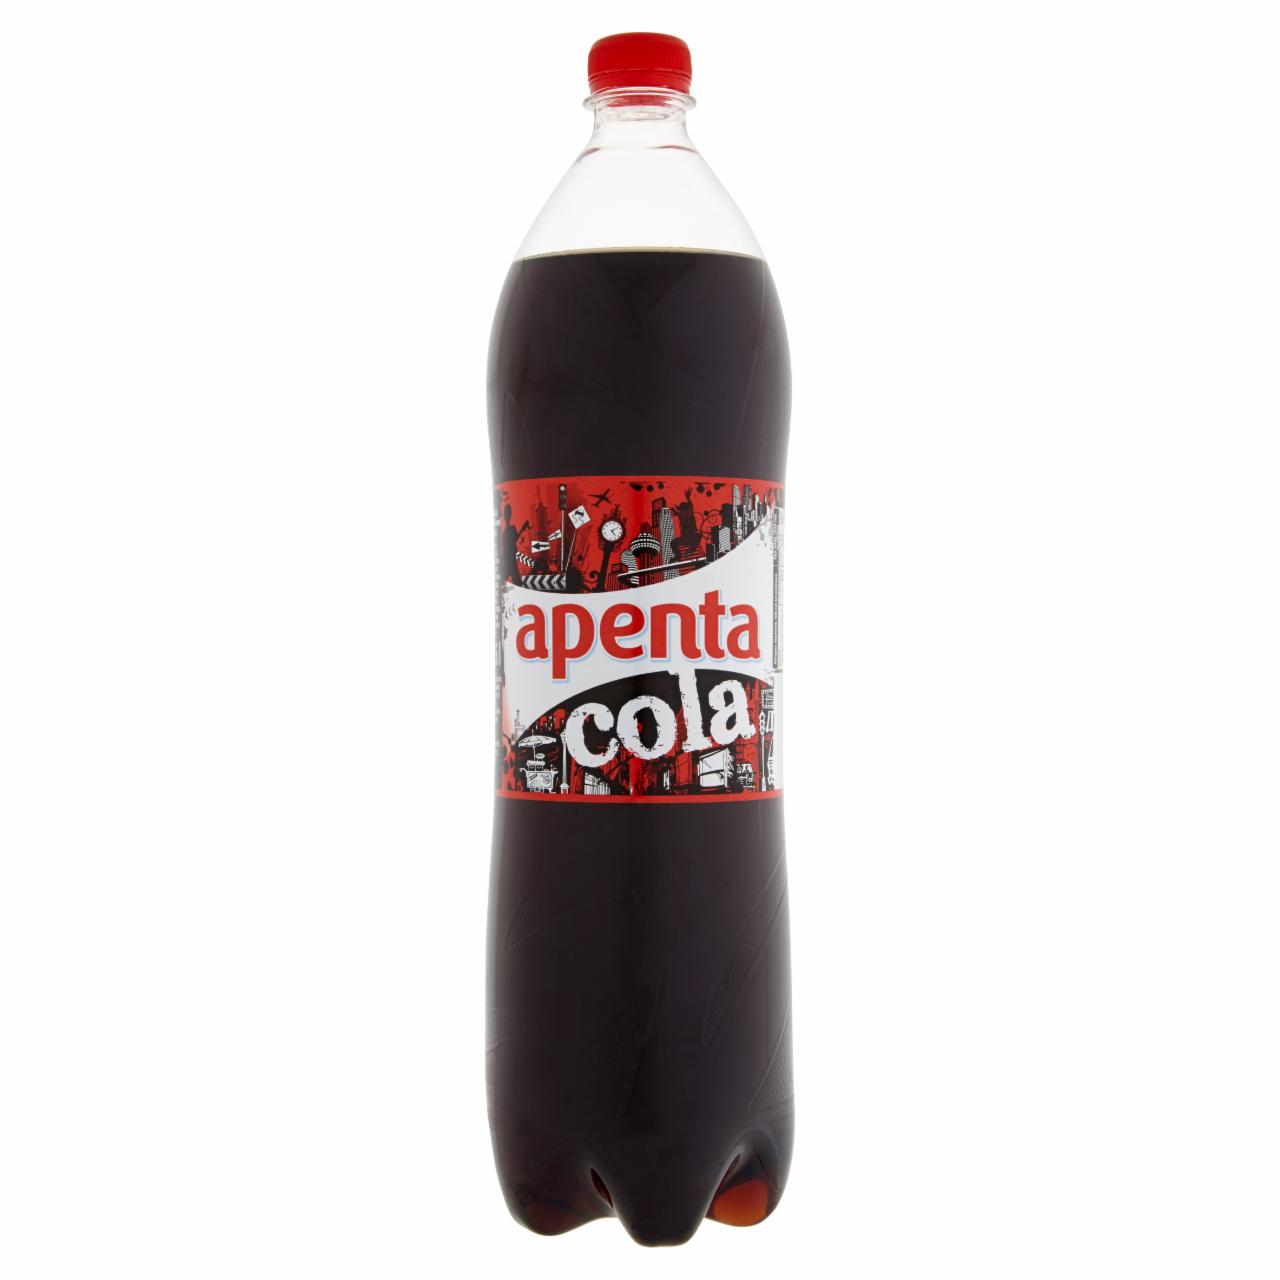 Képek - Apenta Cola colaízű szénsavas üdítőital cukorral és édesítőszerekkel 1,5 l